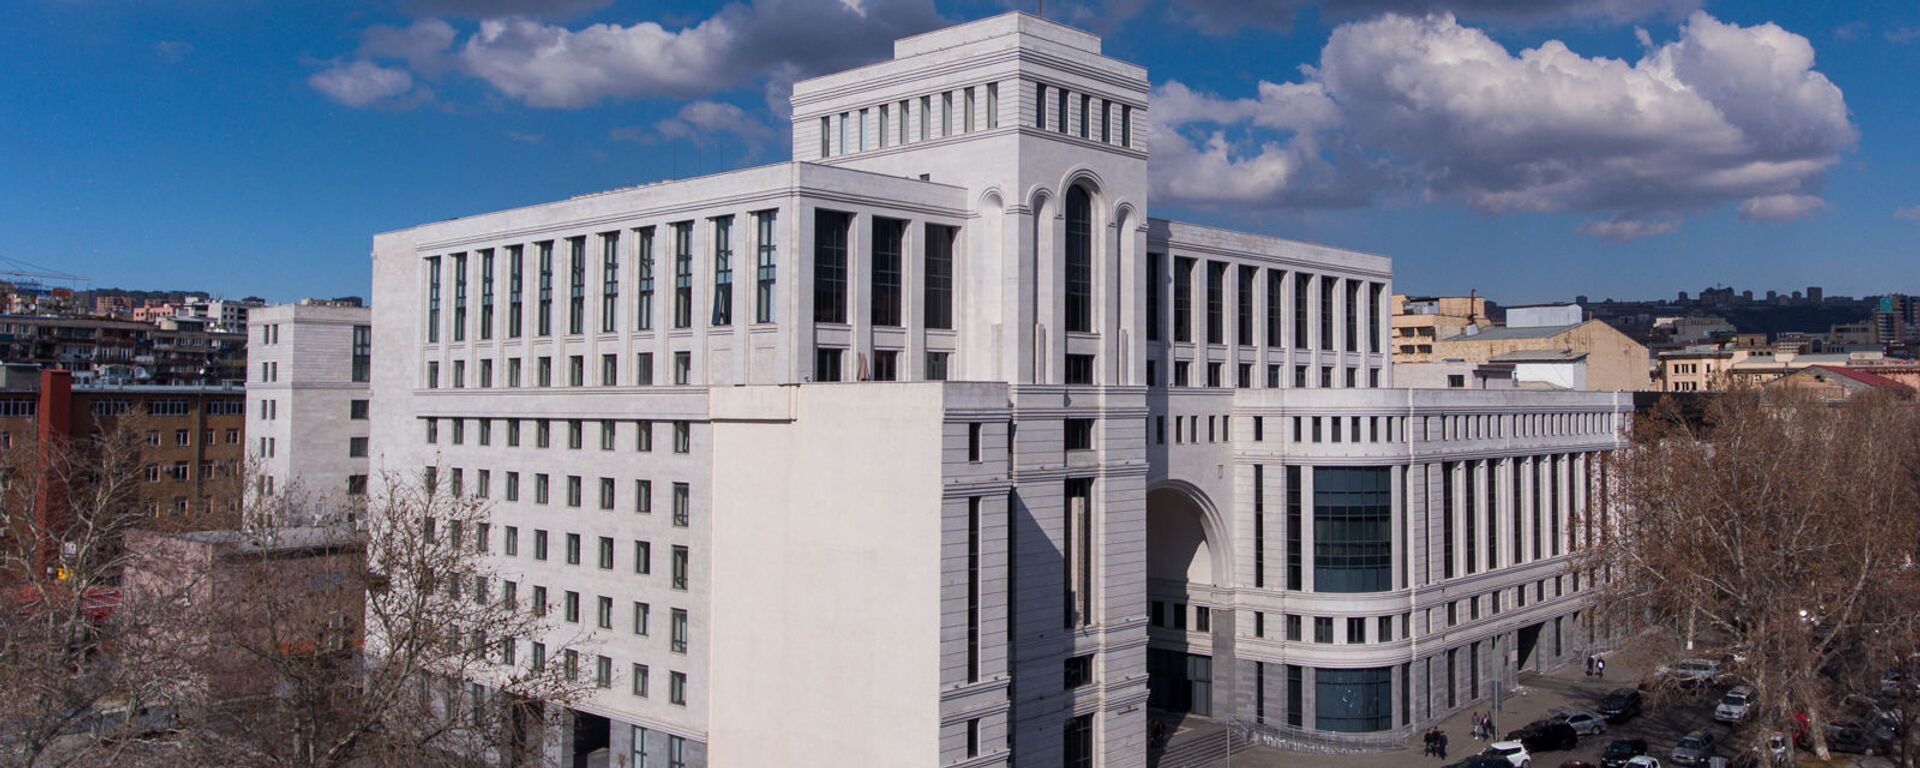 Здание министерства иностранных дел Армении - Sputnik Արմենիա, 1920, 19.07.2021